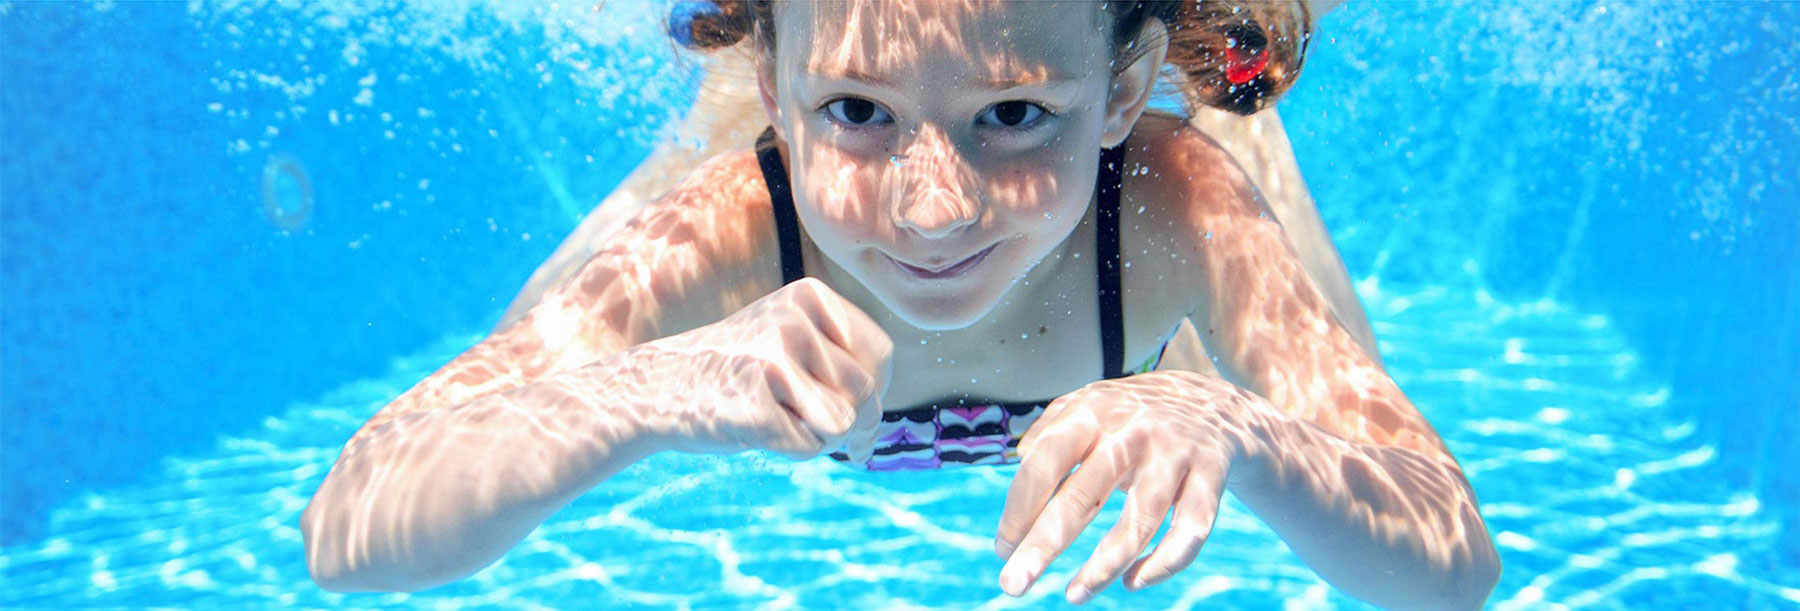 Dievčatko potápajúce sa v bazéne